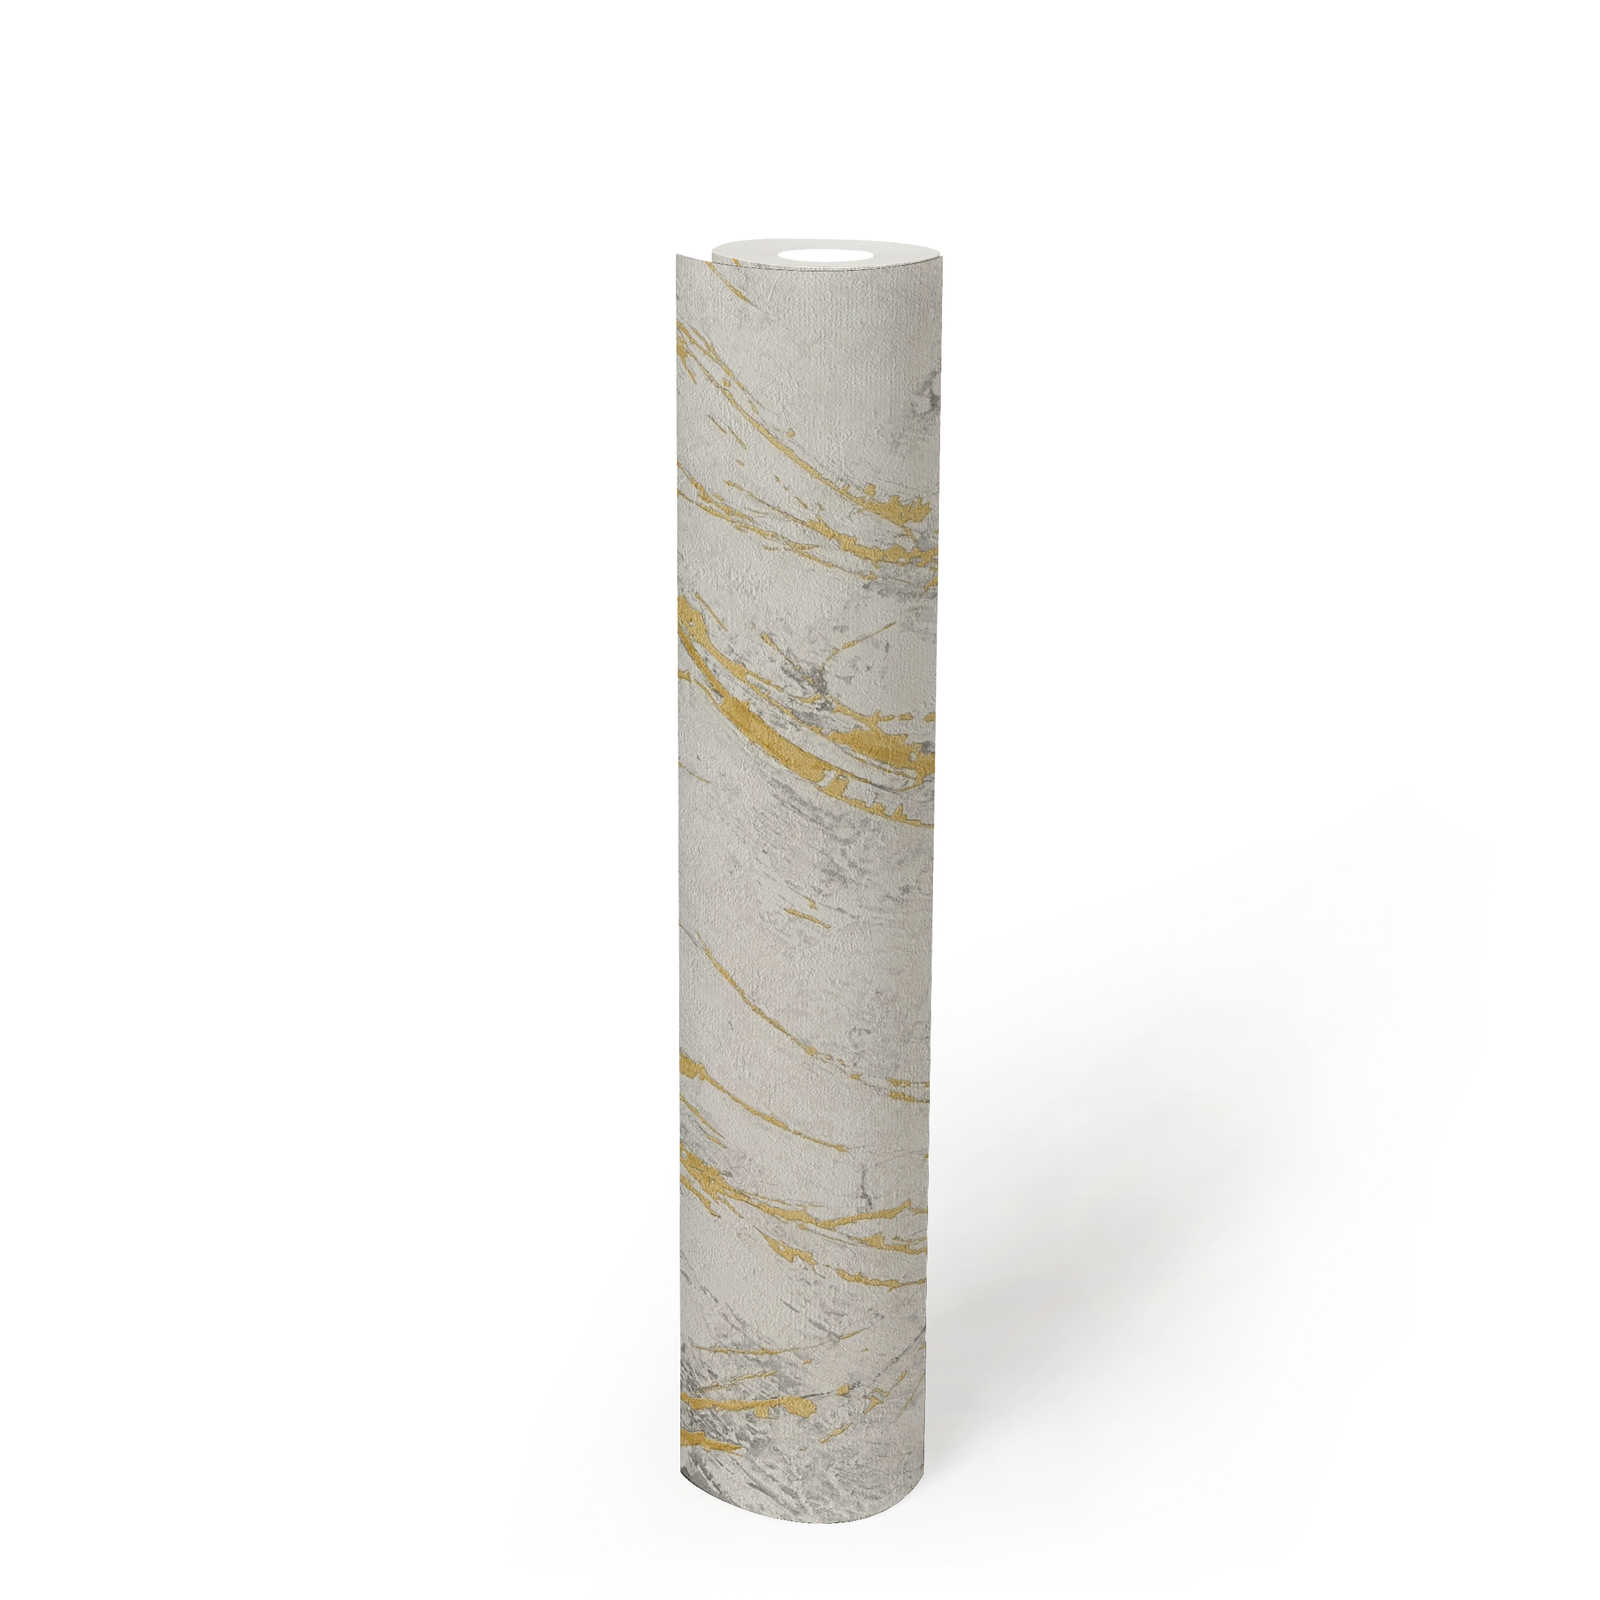             Papel pintado de mármol dorado con diseño de estructura metálica - blanco, metálico
        